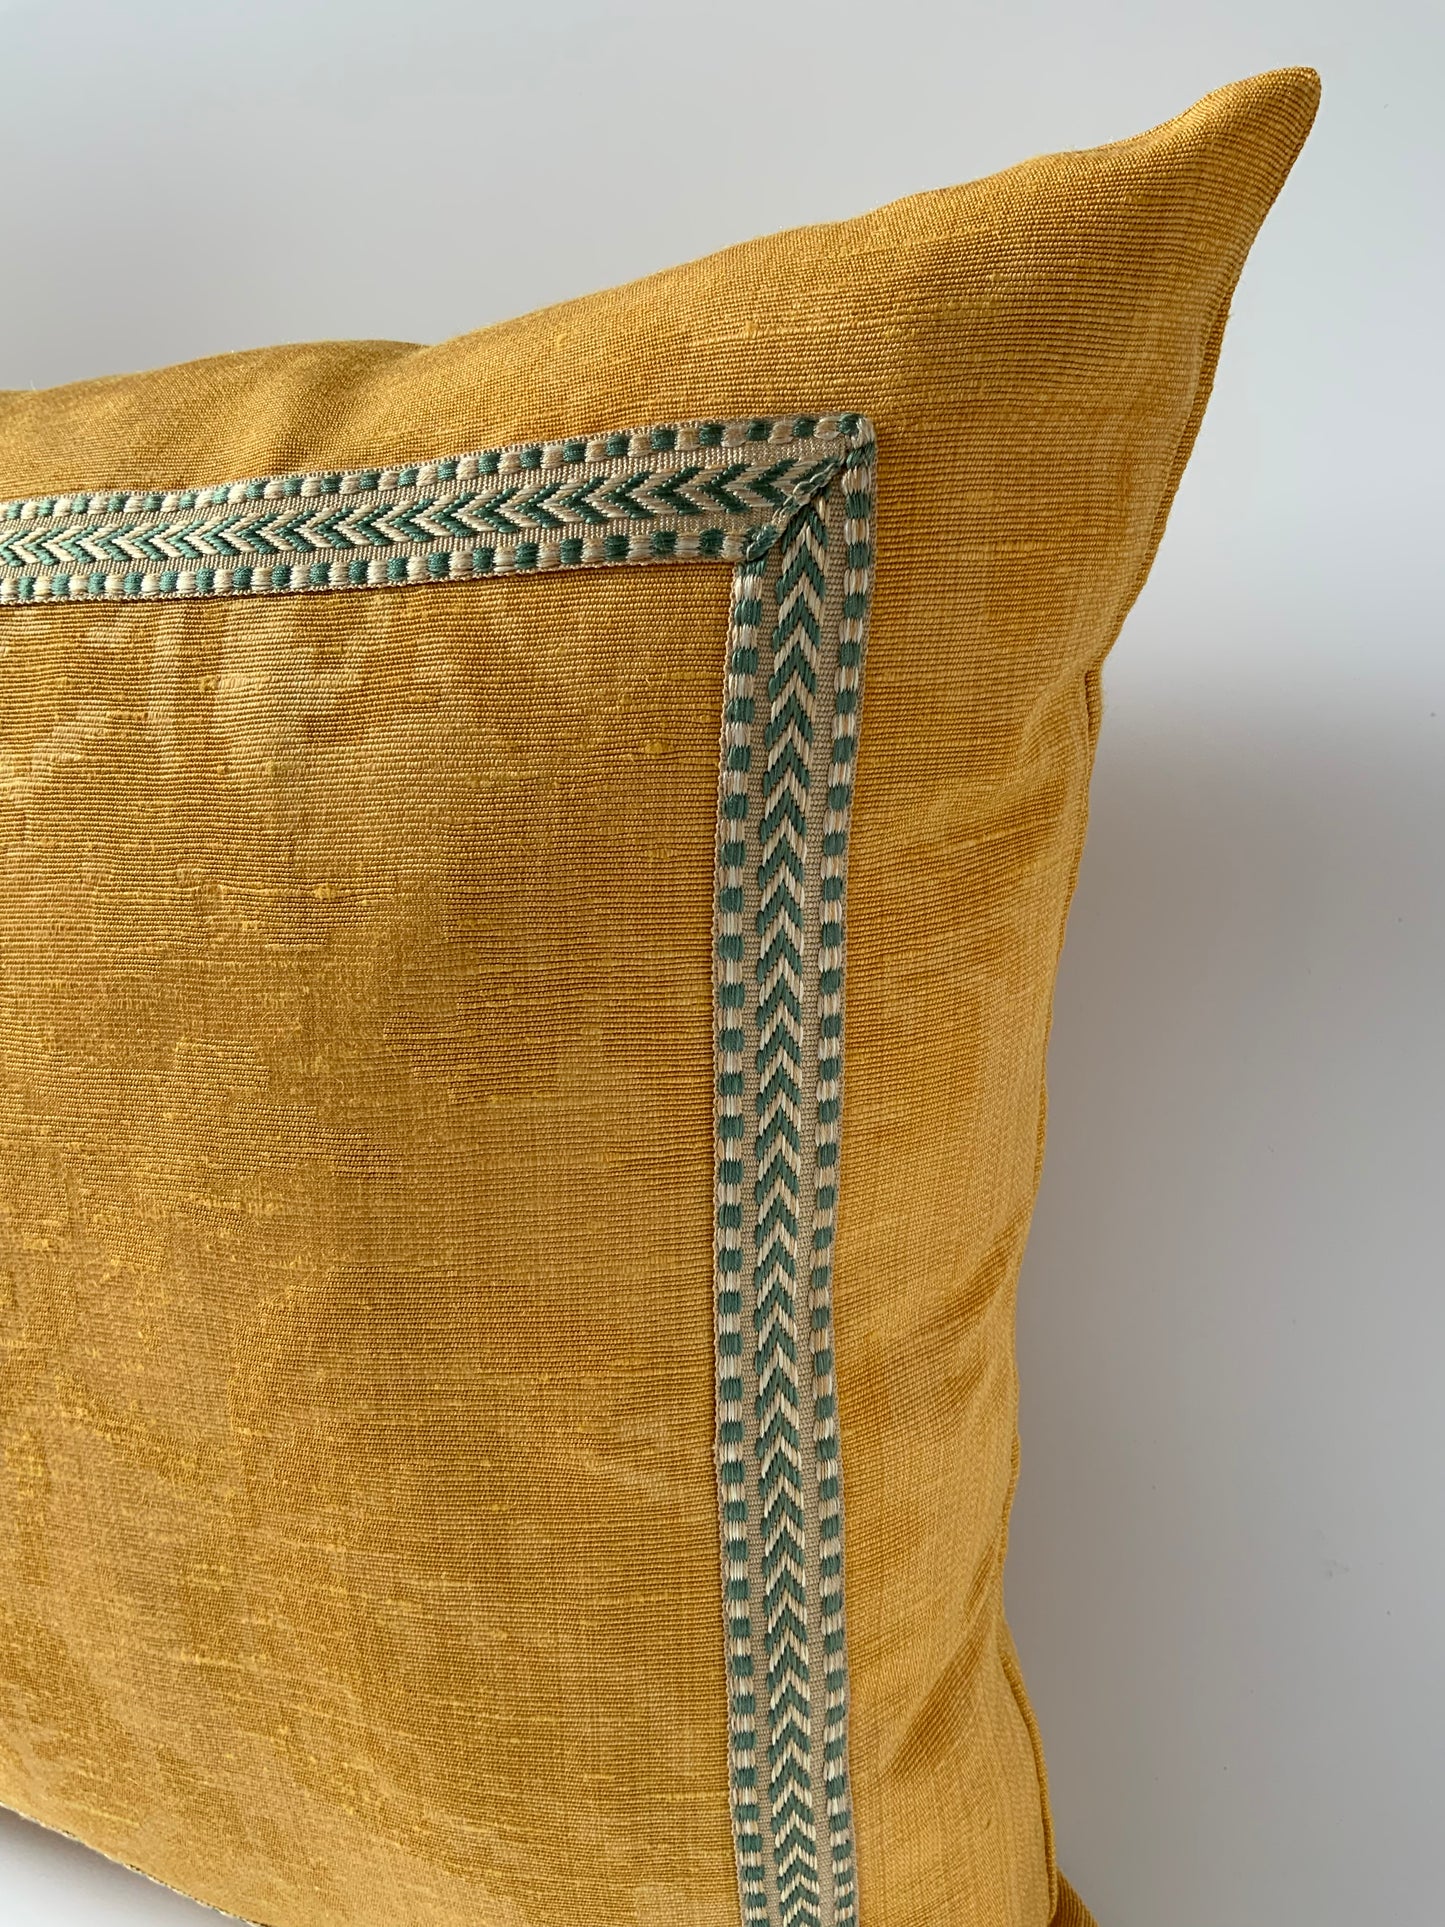 Damask Yellow Silk Linen Lumber 14”x20”